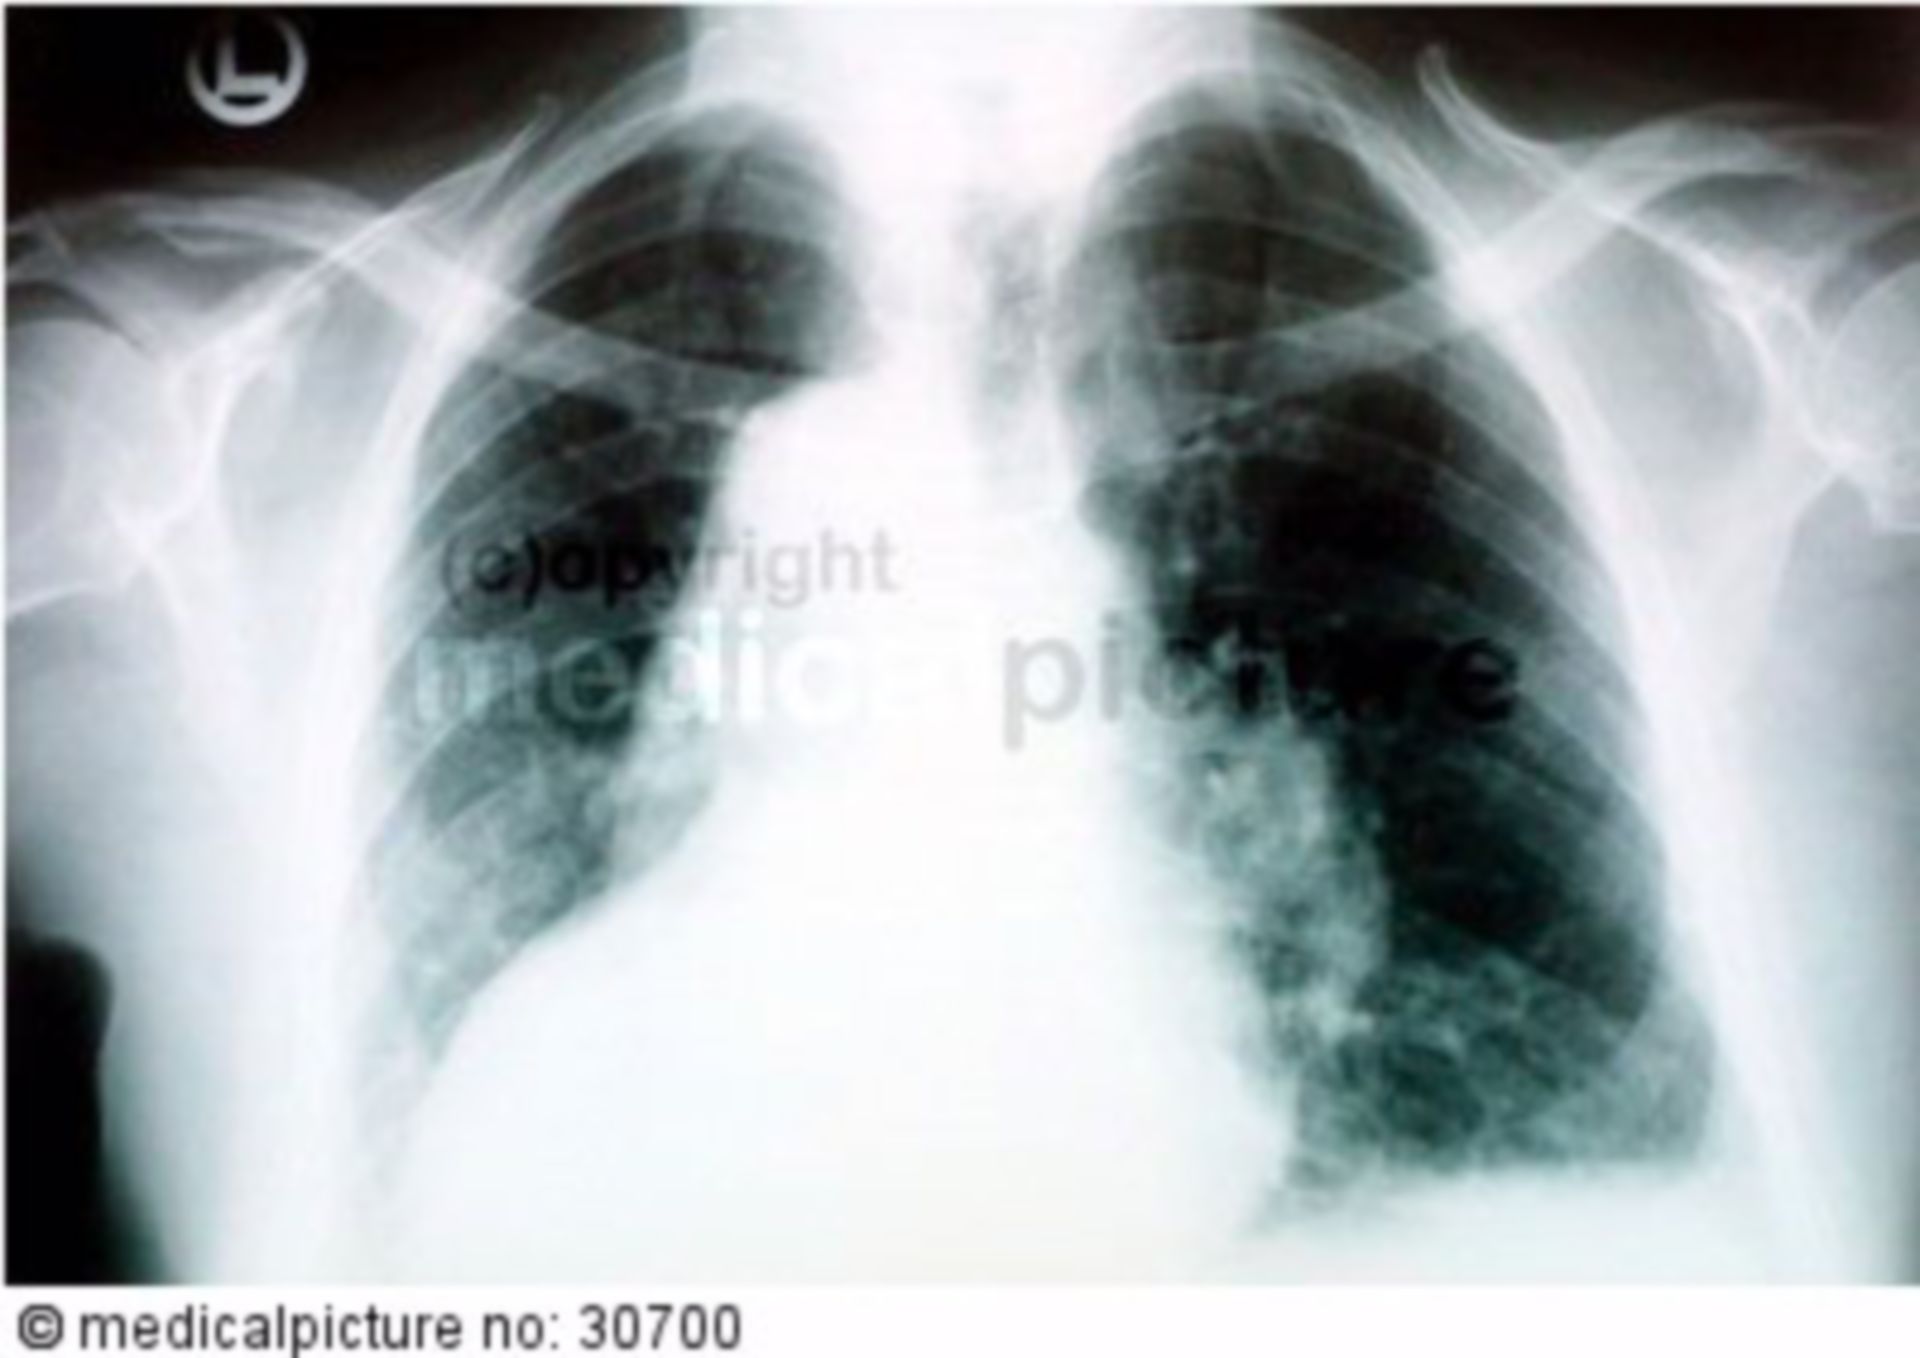 Röntgenbild vom Brustkorb